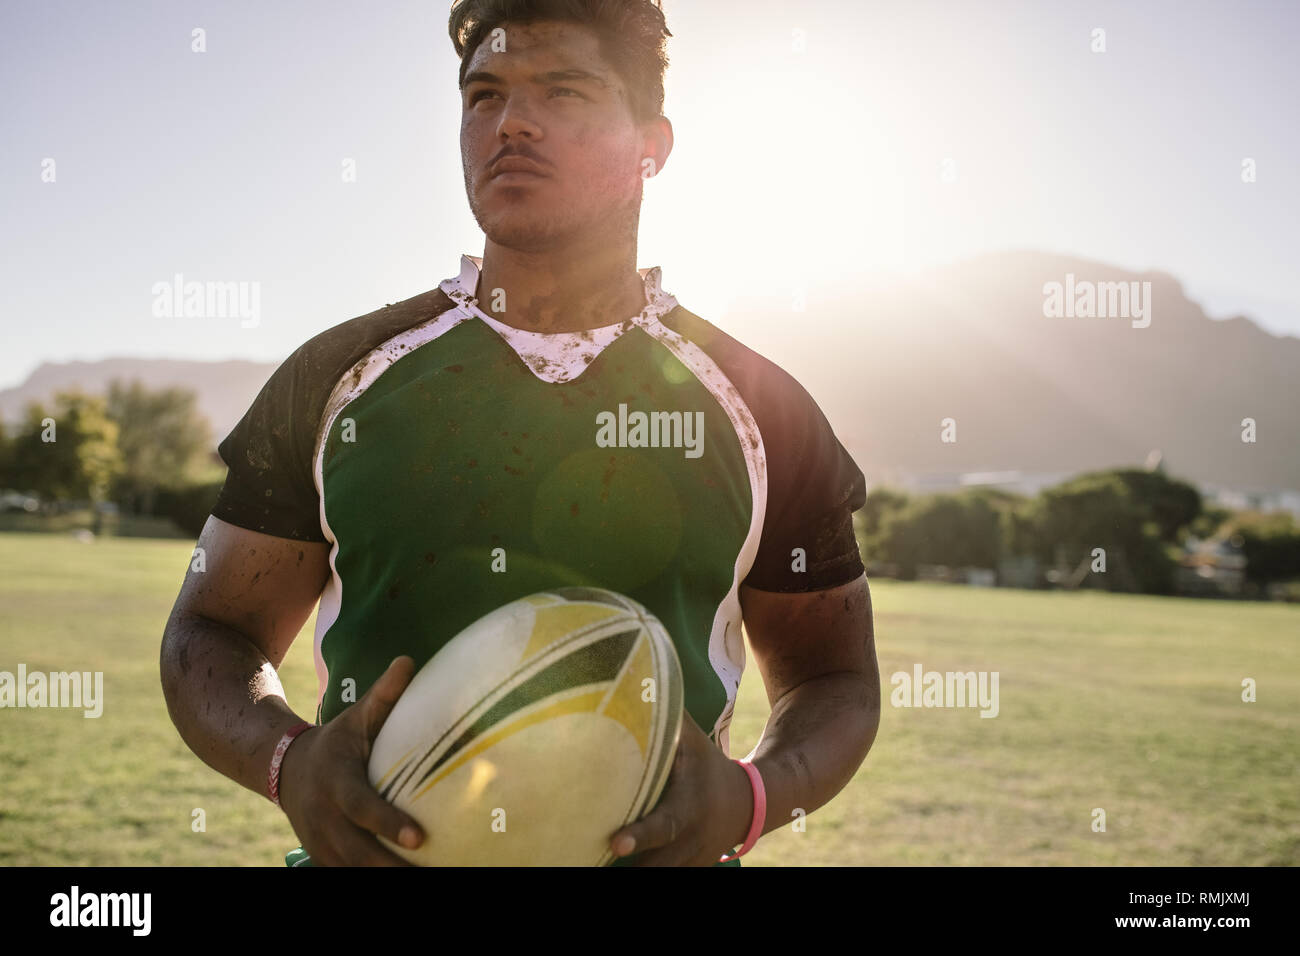 rugbyspieler, der einen Rugbyball auf dem Sportplatz hält. Junger Sportler, der einen Rugbyball mit schmutziger Uniform hält. Stockfoto